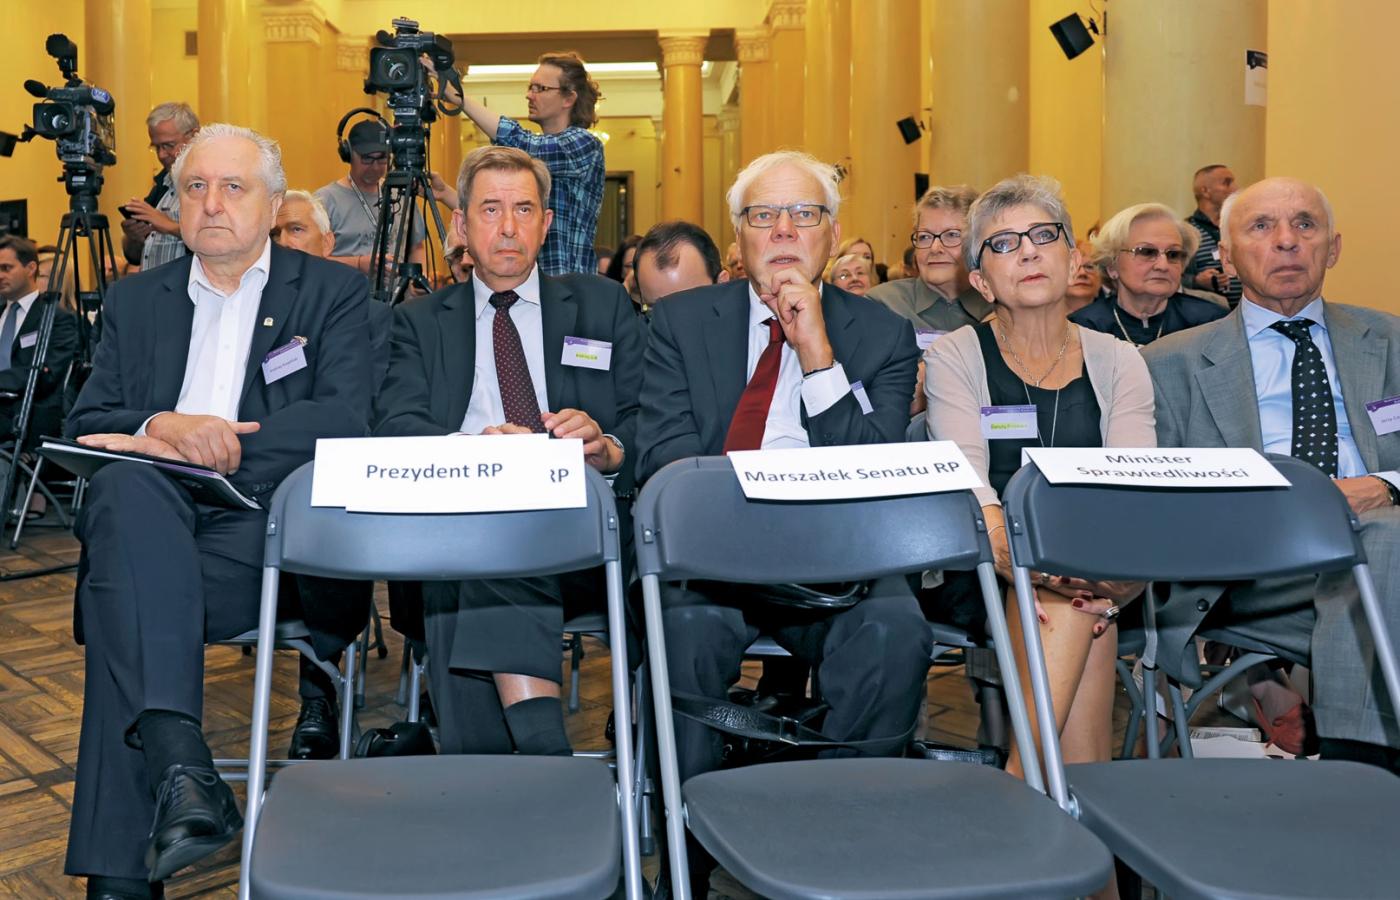 Od lewej: sędziowie Andrzej Rzepliński, Andrzej Zoll, Marek Safjan, Danuta Przywara. Przed nimi puste krzesła zaproszonych gości – prezydenta, marszałka Senatu, ministra sprawiedliwości.